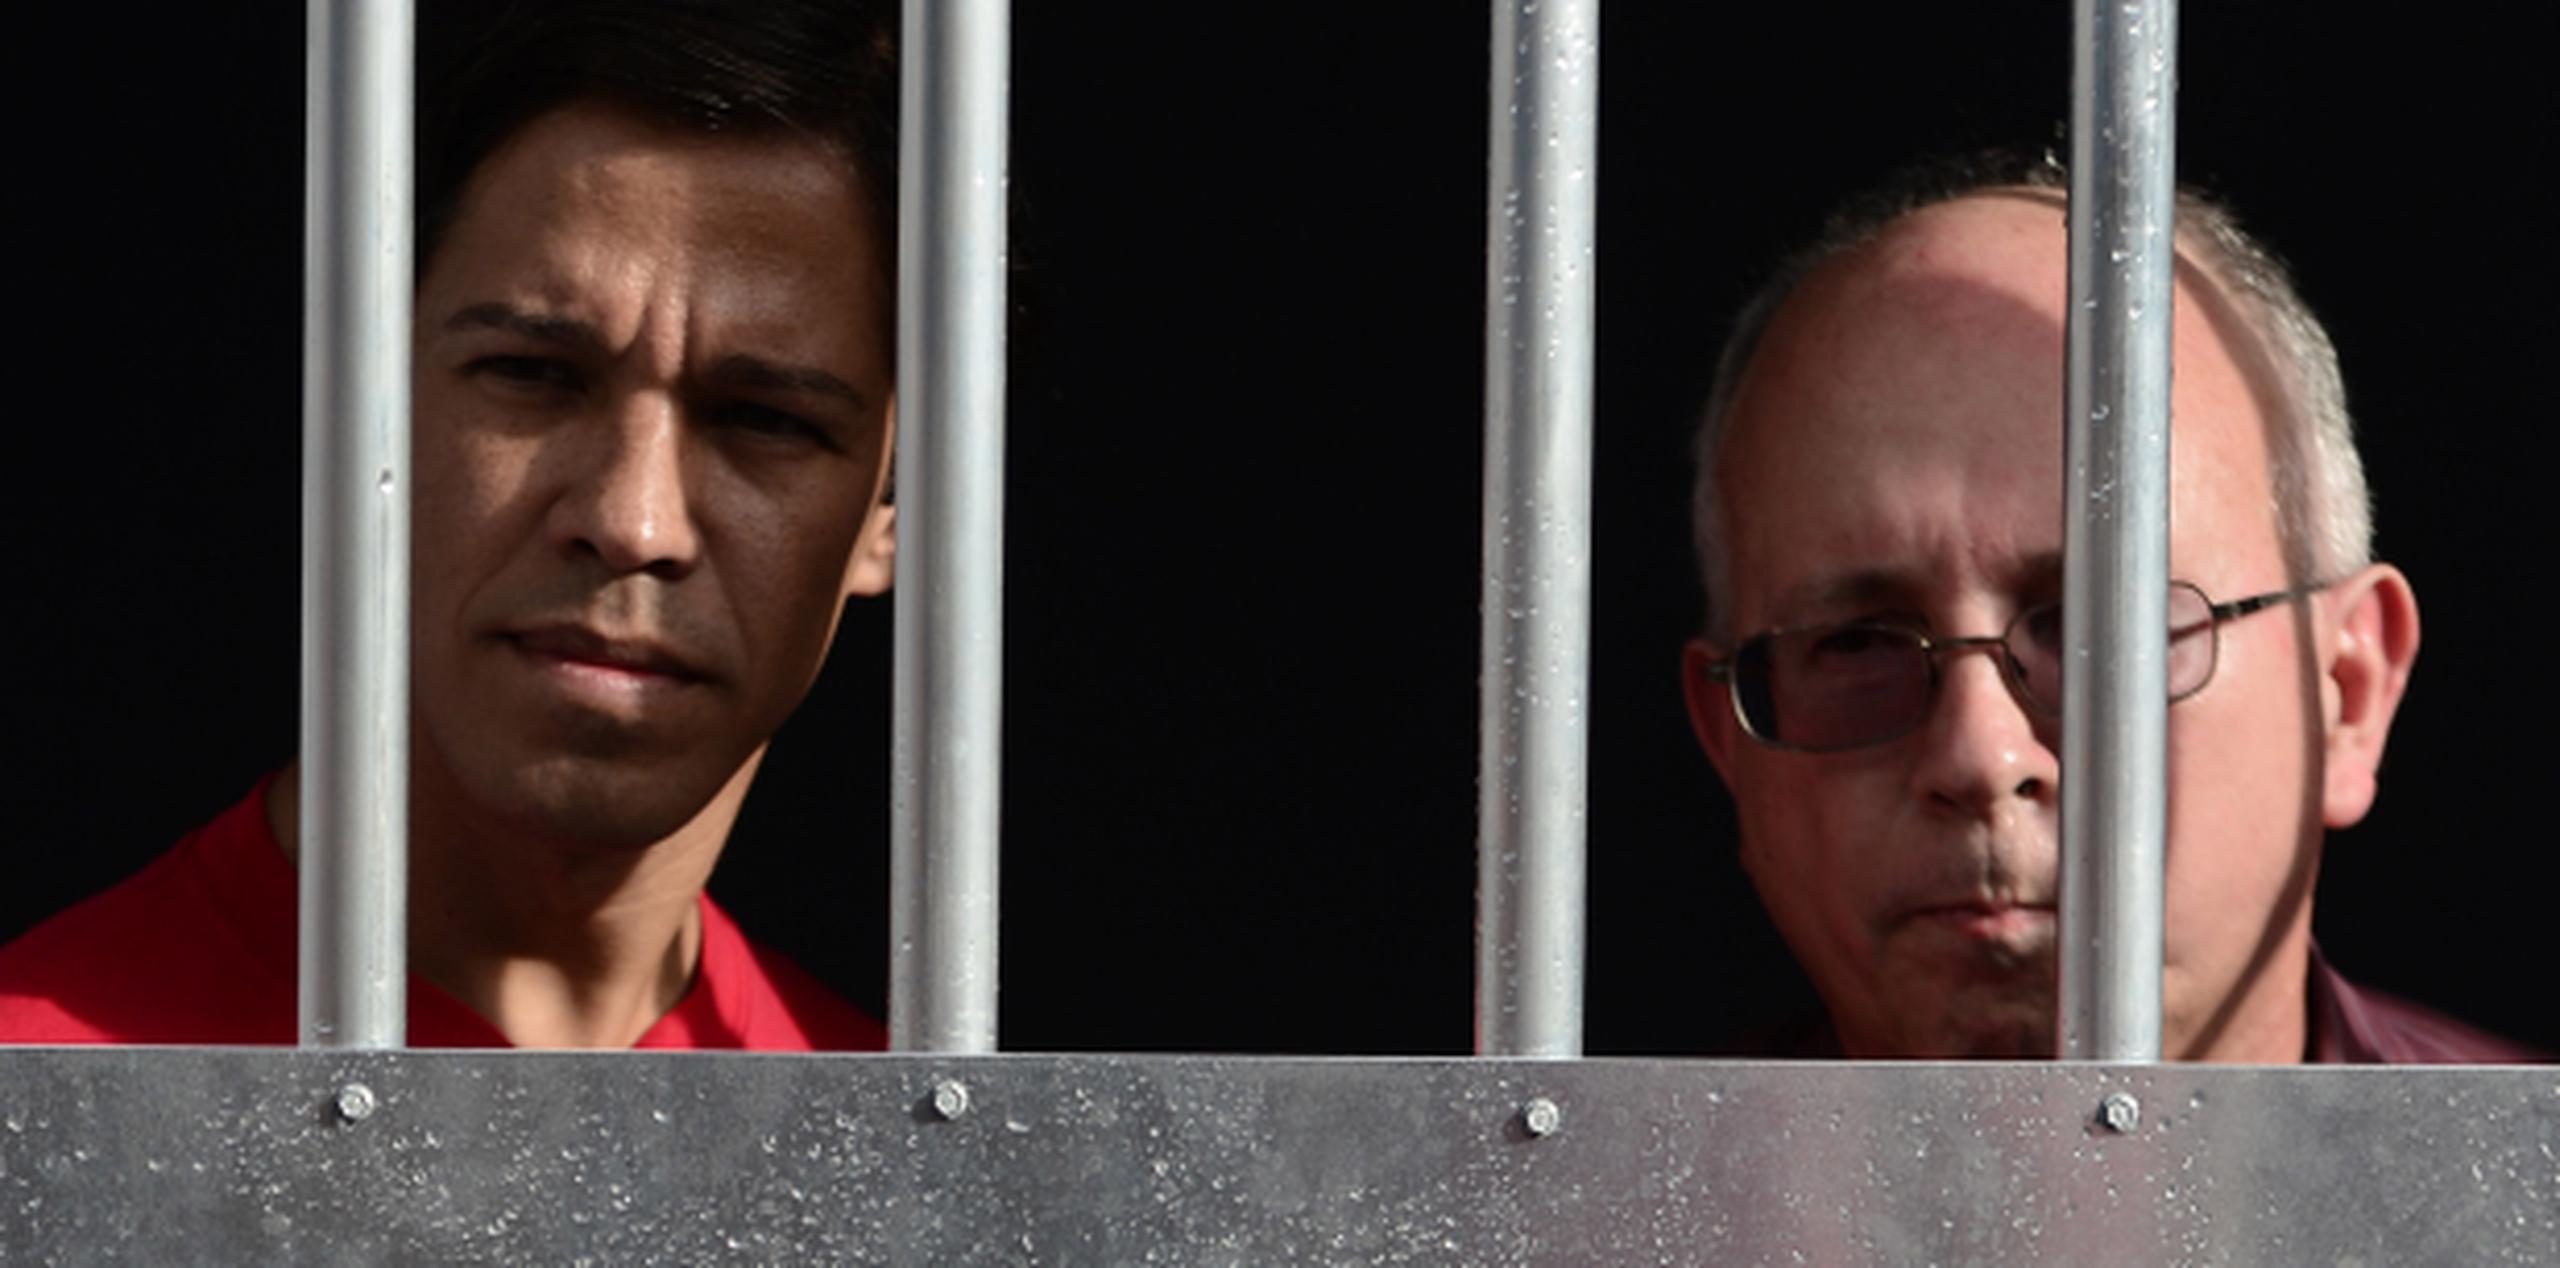 Durante 15 minutos, Vázquez y Serrano Burgos compartieron la estrecha celda que es réplica de la que ha ocupado durante 32 años en una prisión federal. (carlos.giusti@gfrmedia.com)